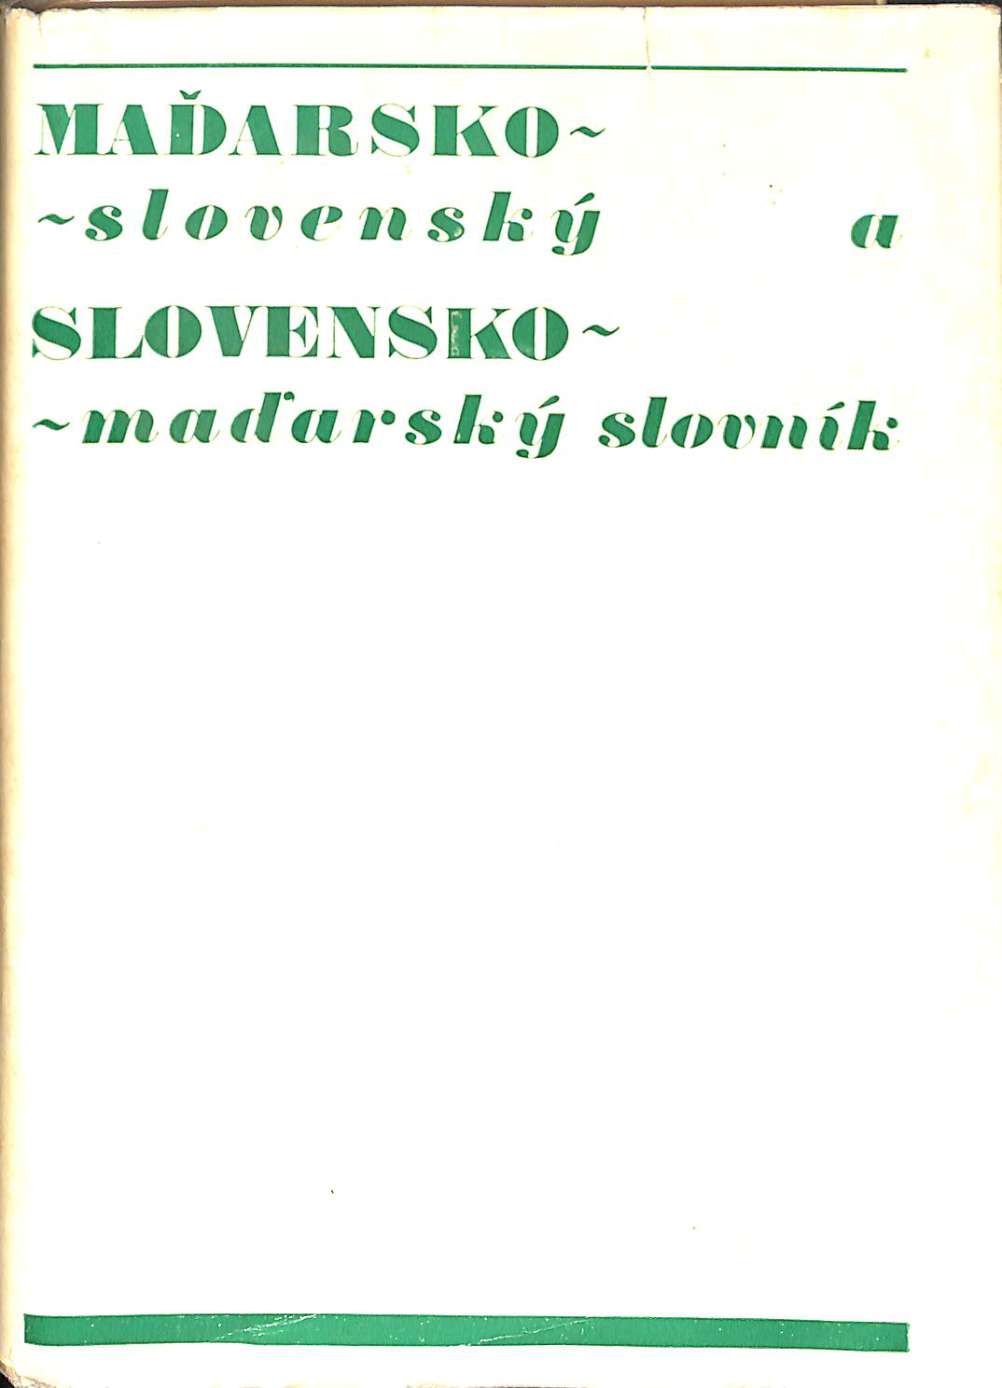 Maarsko Slovensk a Slovensko Maarsk slovnk